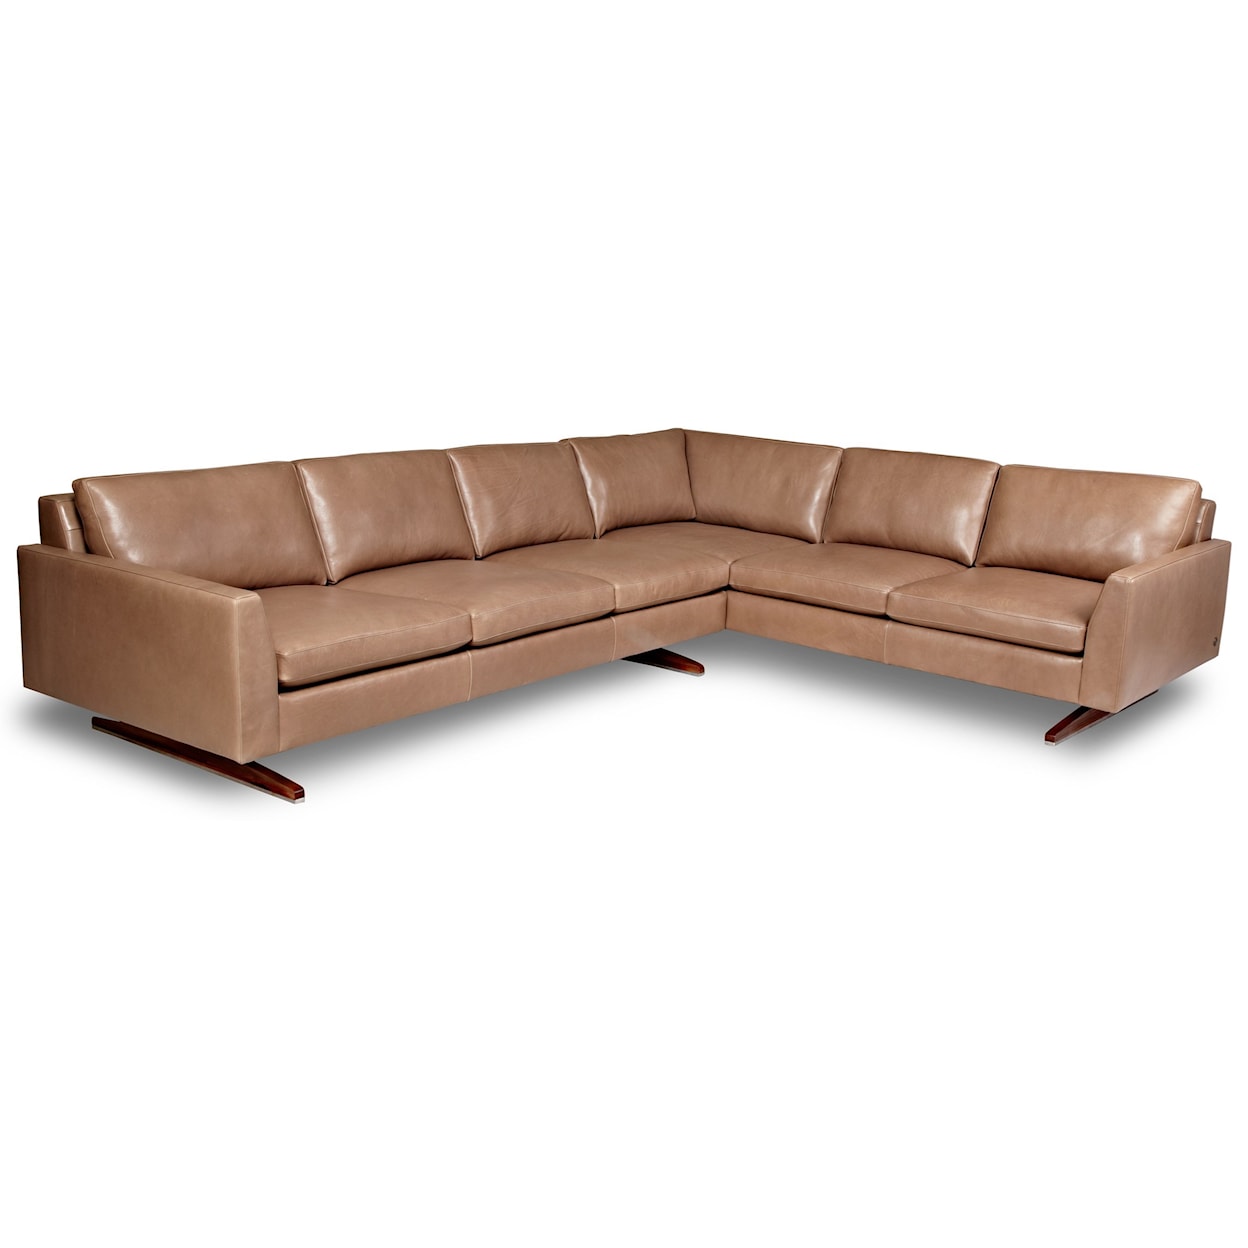 American Leather Flynn 5-Seat Sec Sofa w/ Right Arm Sitting Sofa